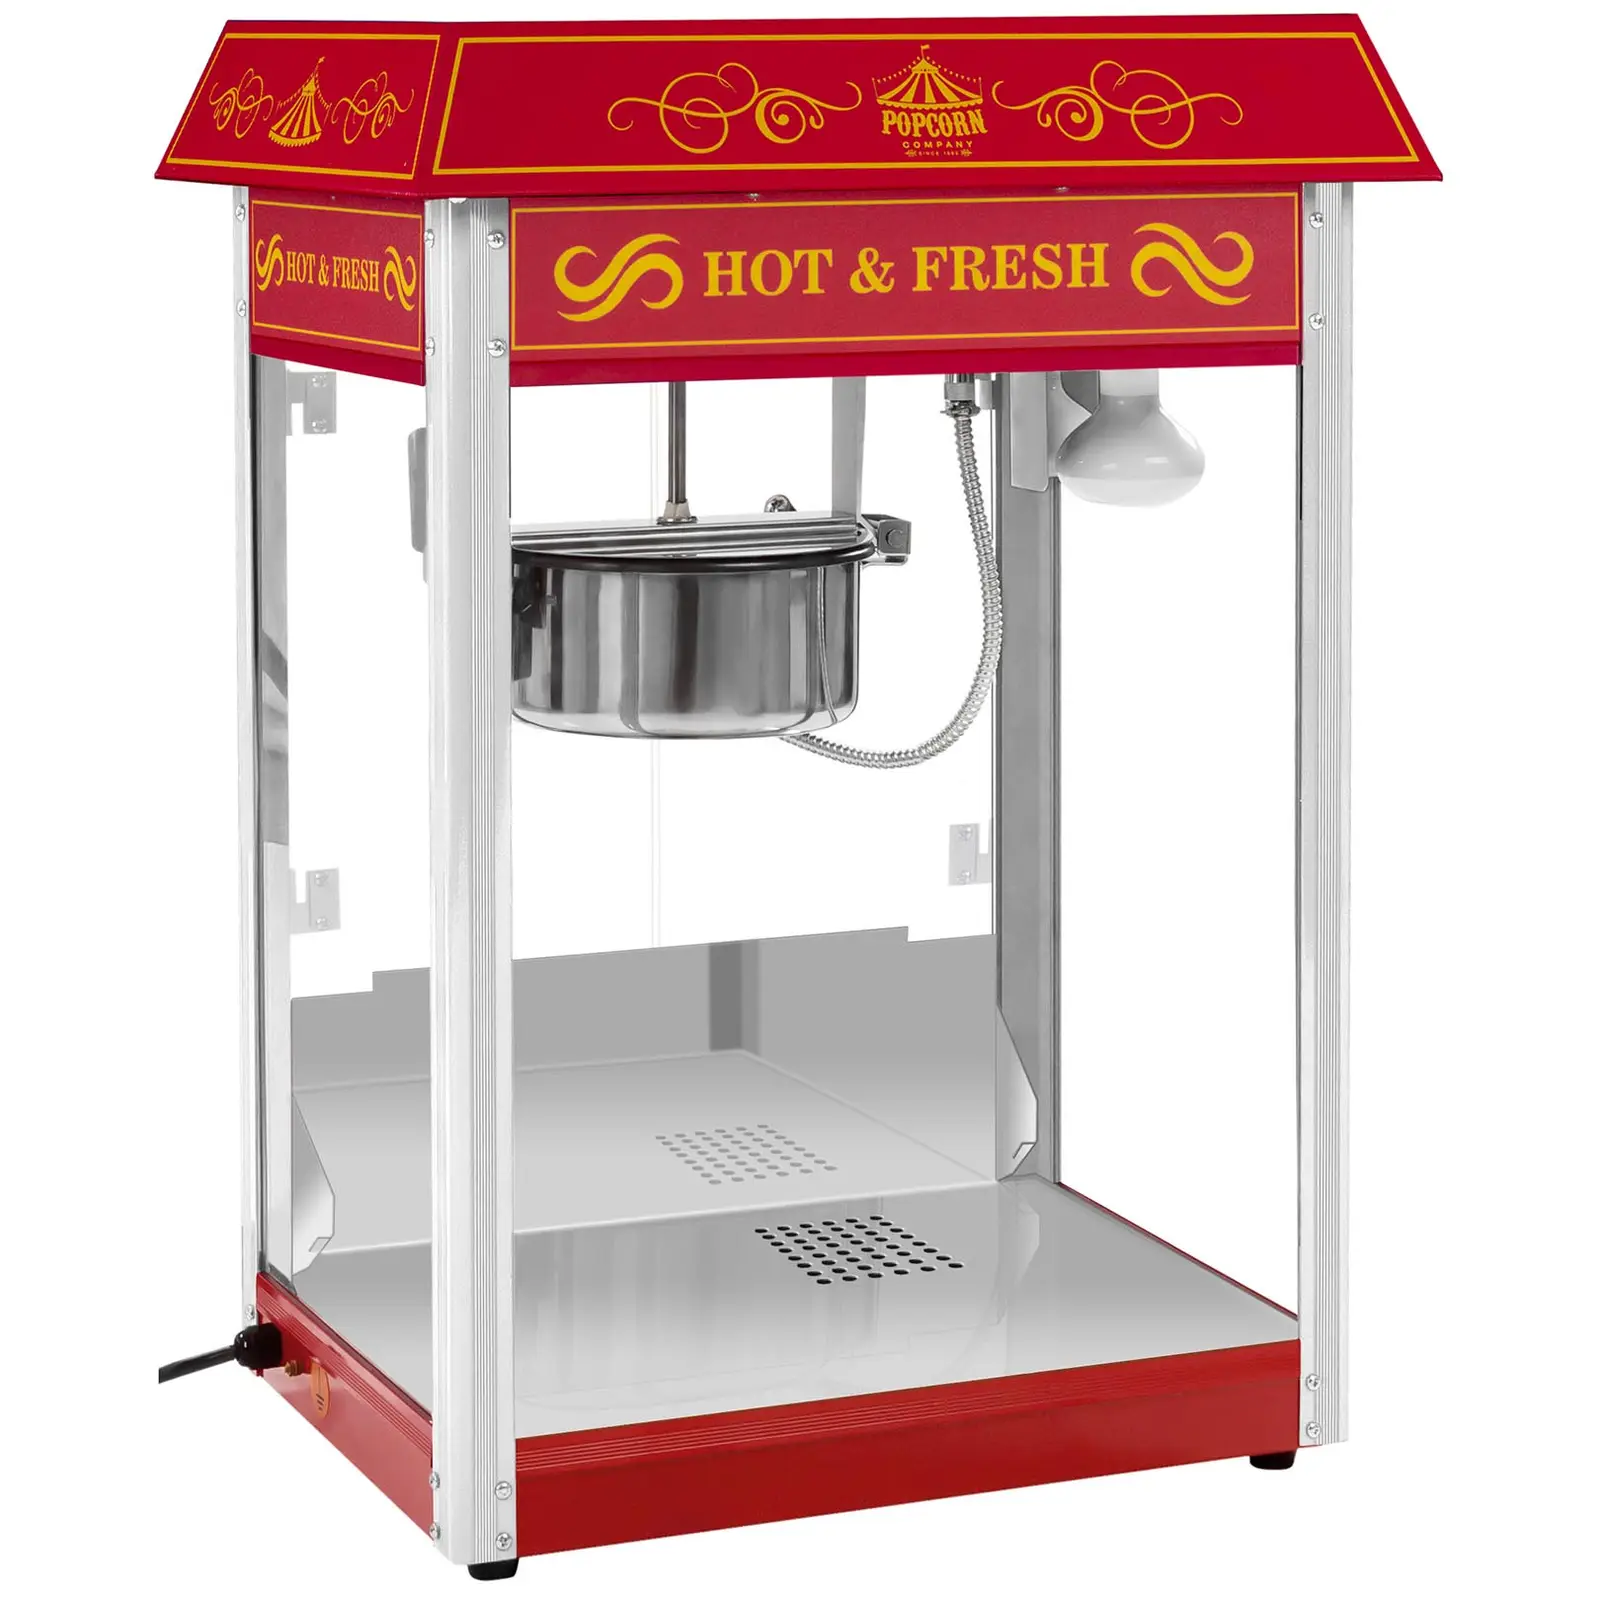 Popcornmaskin med vogn og LED-belysning i Retro-design - rød